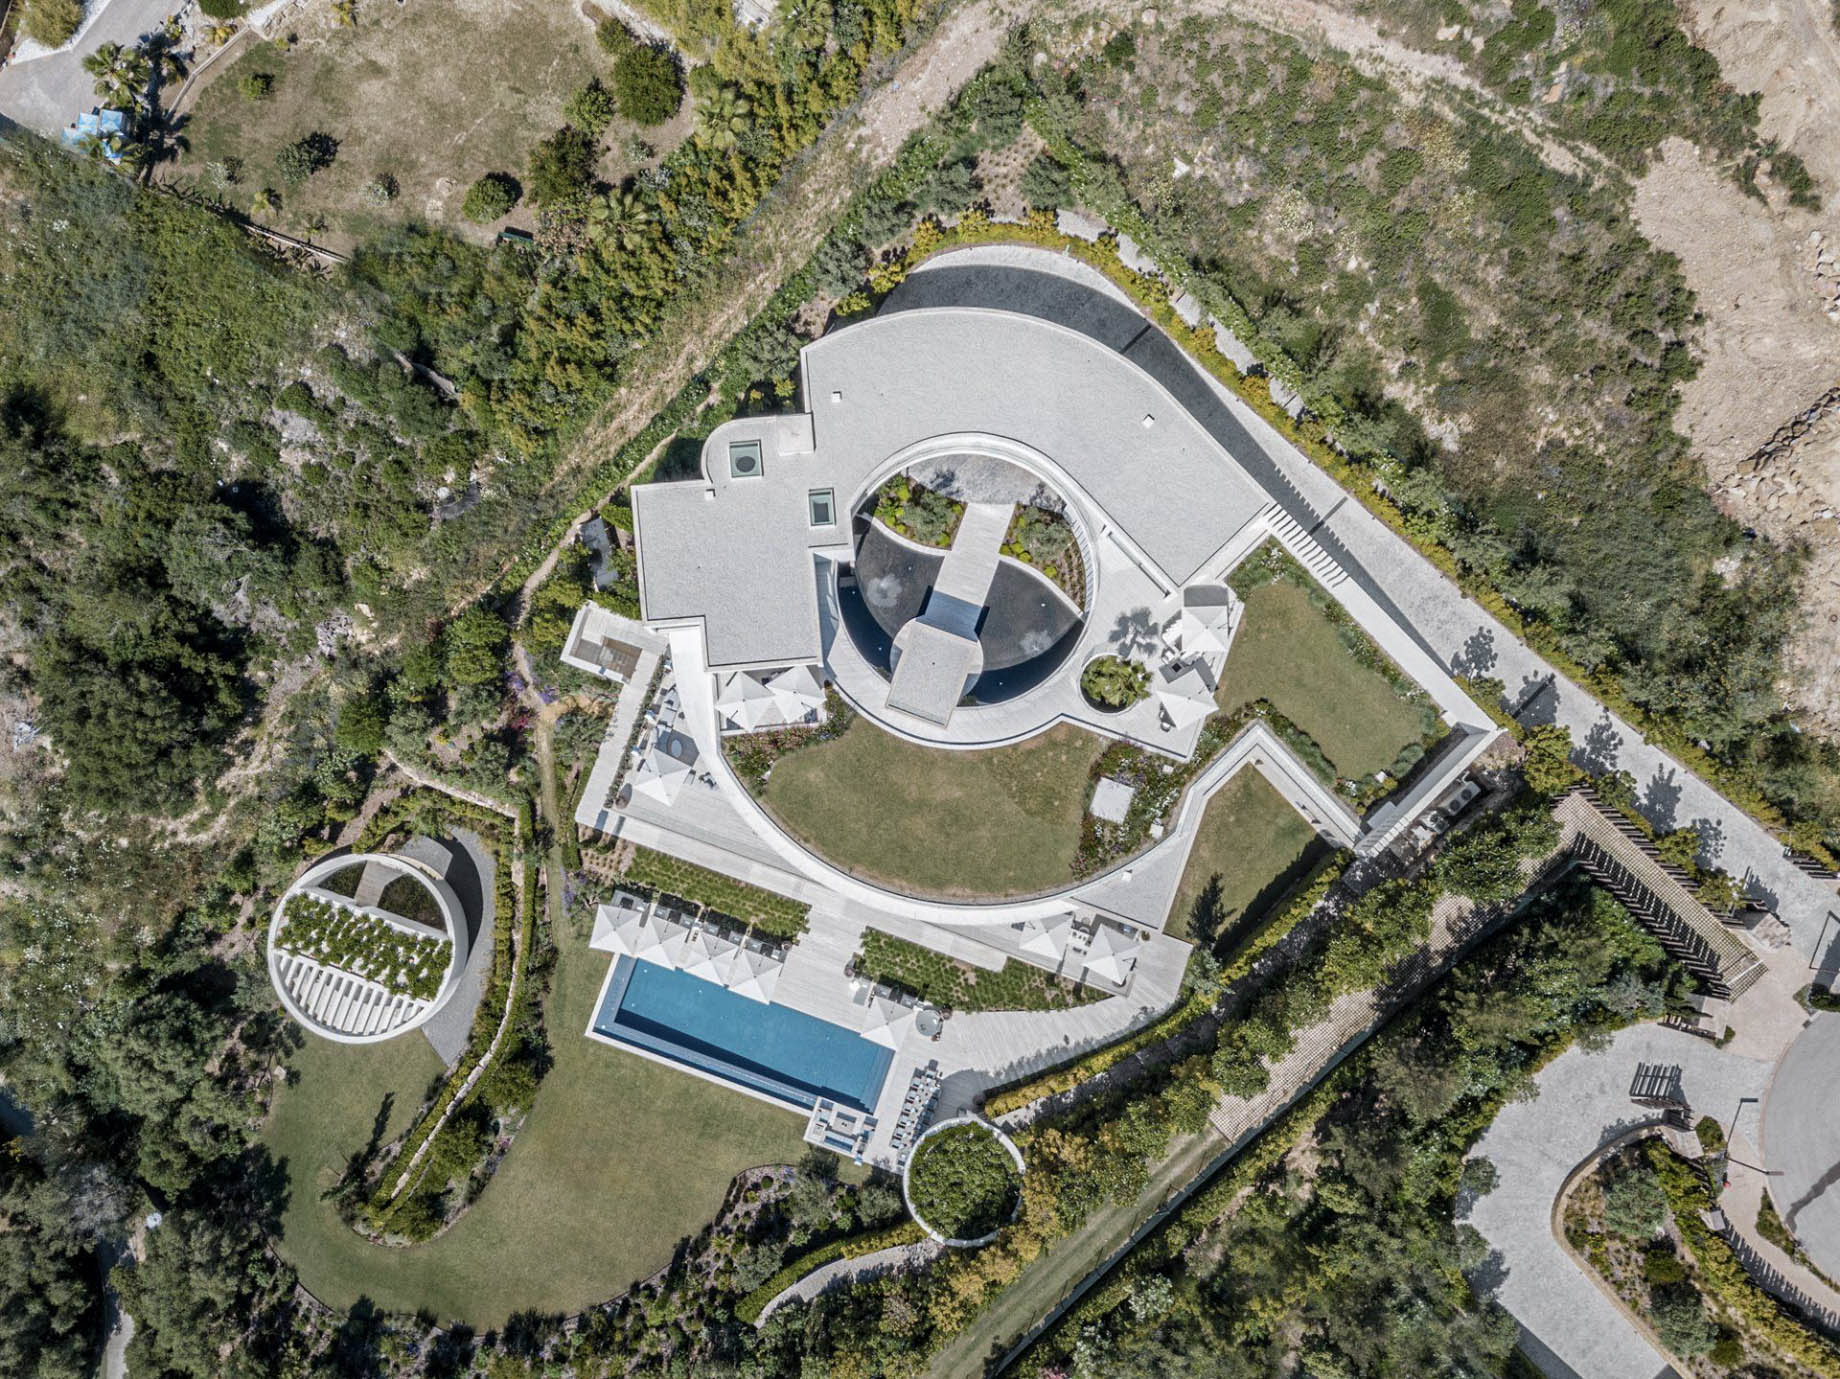 Villa VELA Modern Contemporary Residence – El Mirador, La Reserva Sotogrande, Spain – 2